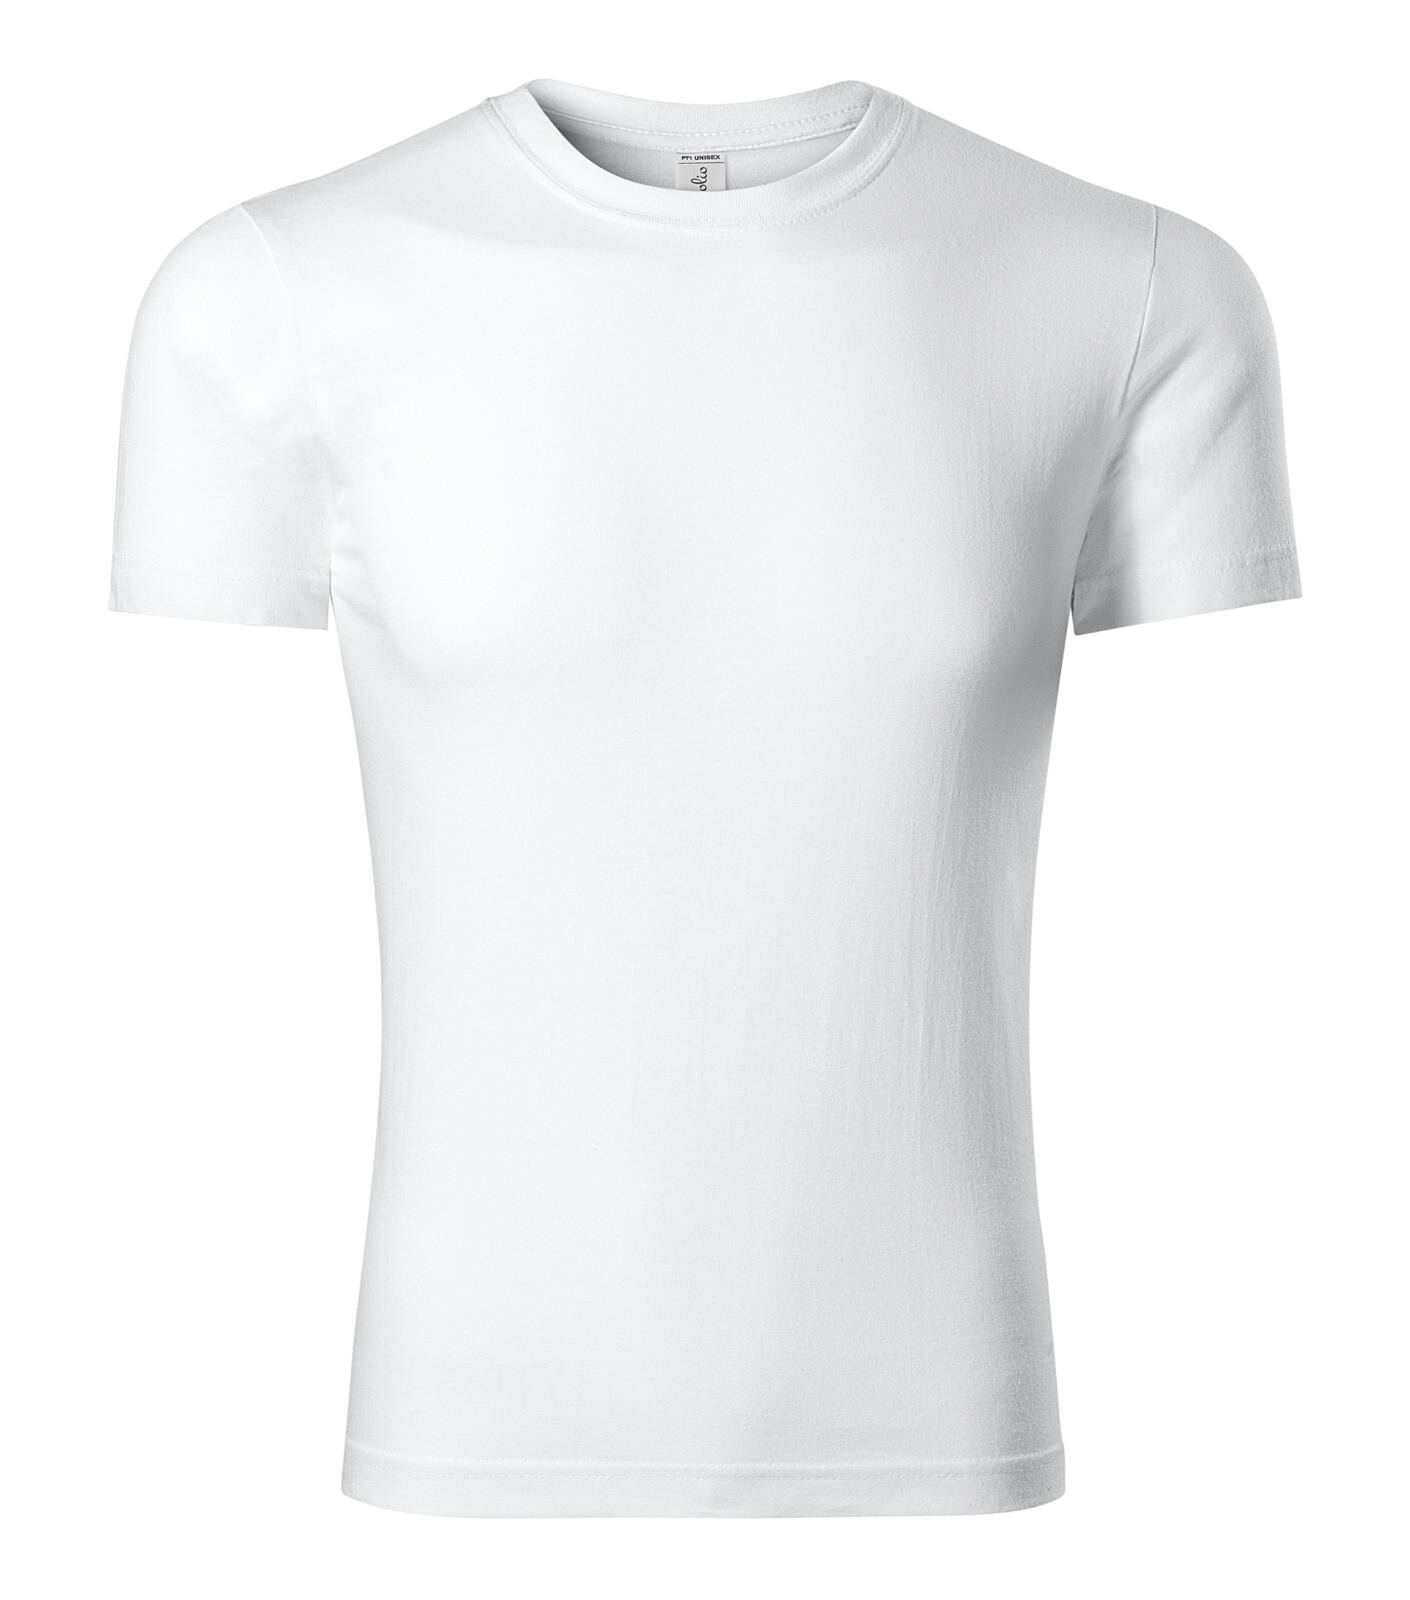 Unisex bavlnené tričko Piccolio Parade P71 - veľkosť: S, farba: biela